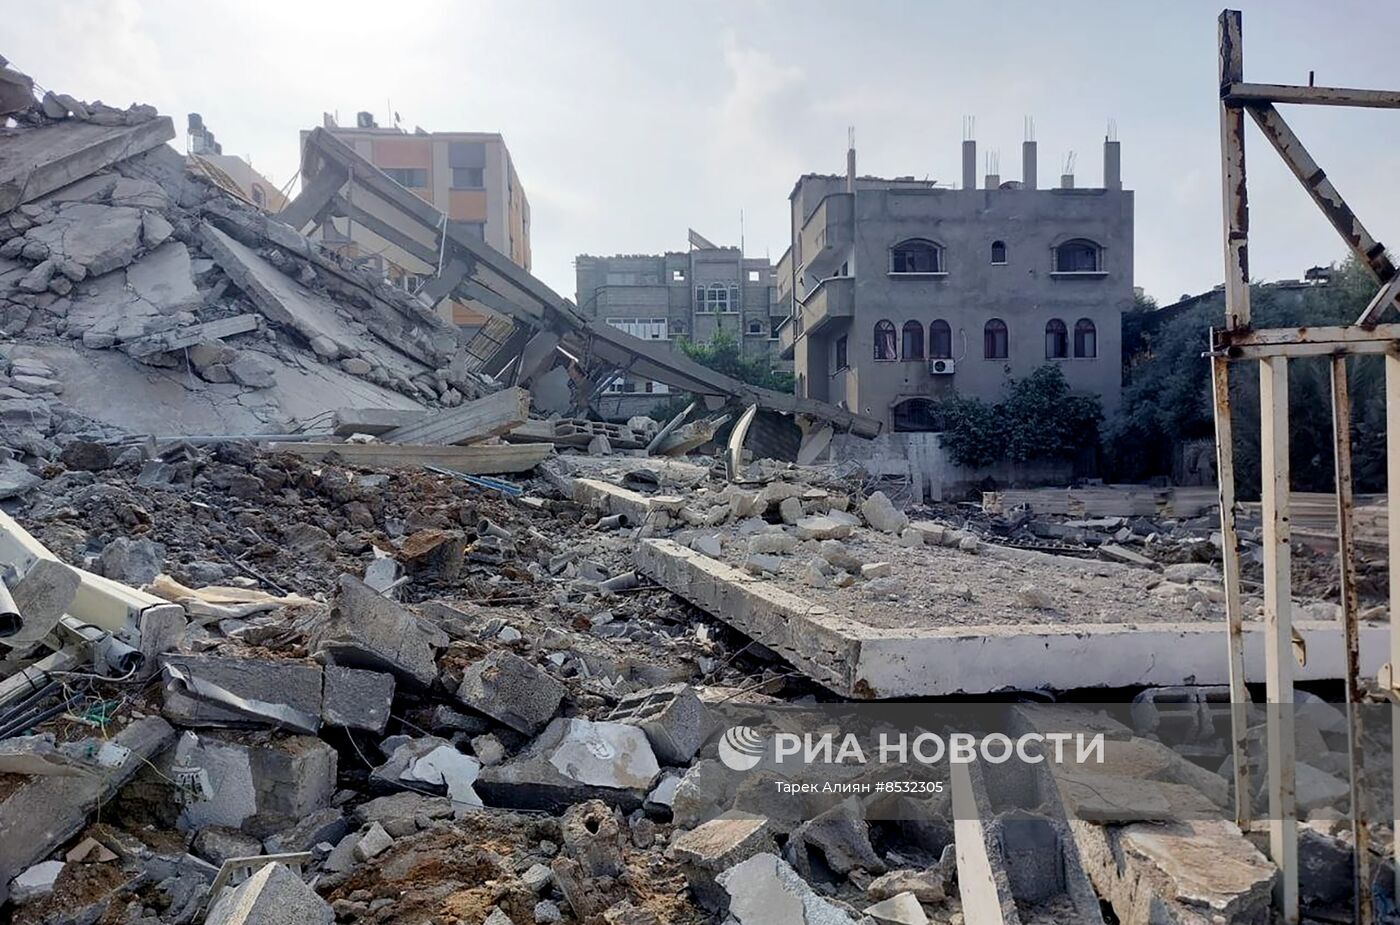 الأمم المتحدة تحذر من أن أي تشديد للحصار على غزة سيجعل الوضع أكثر مأساوية